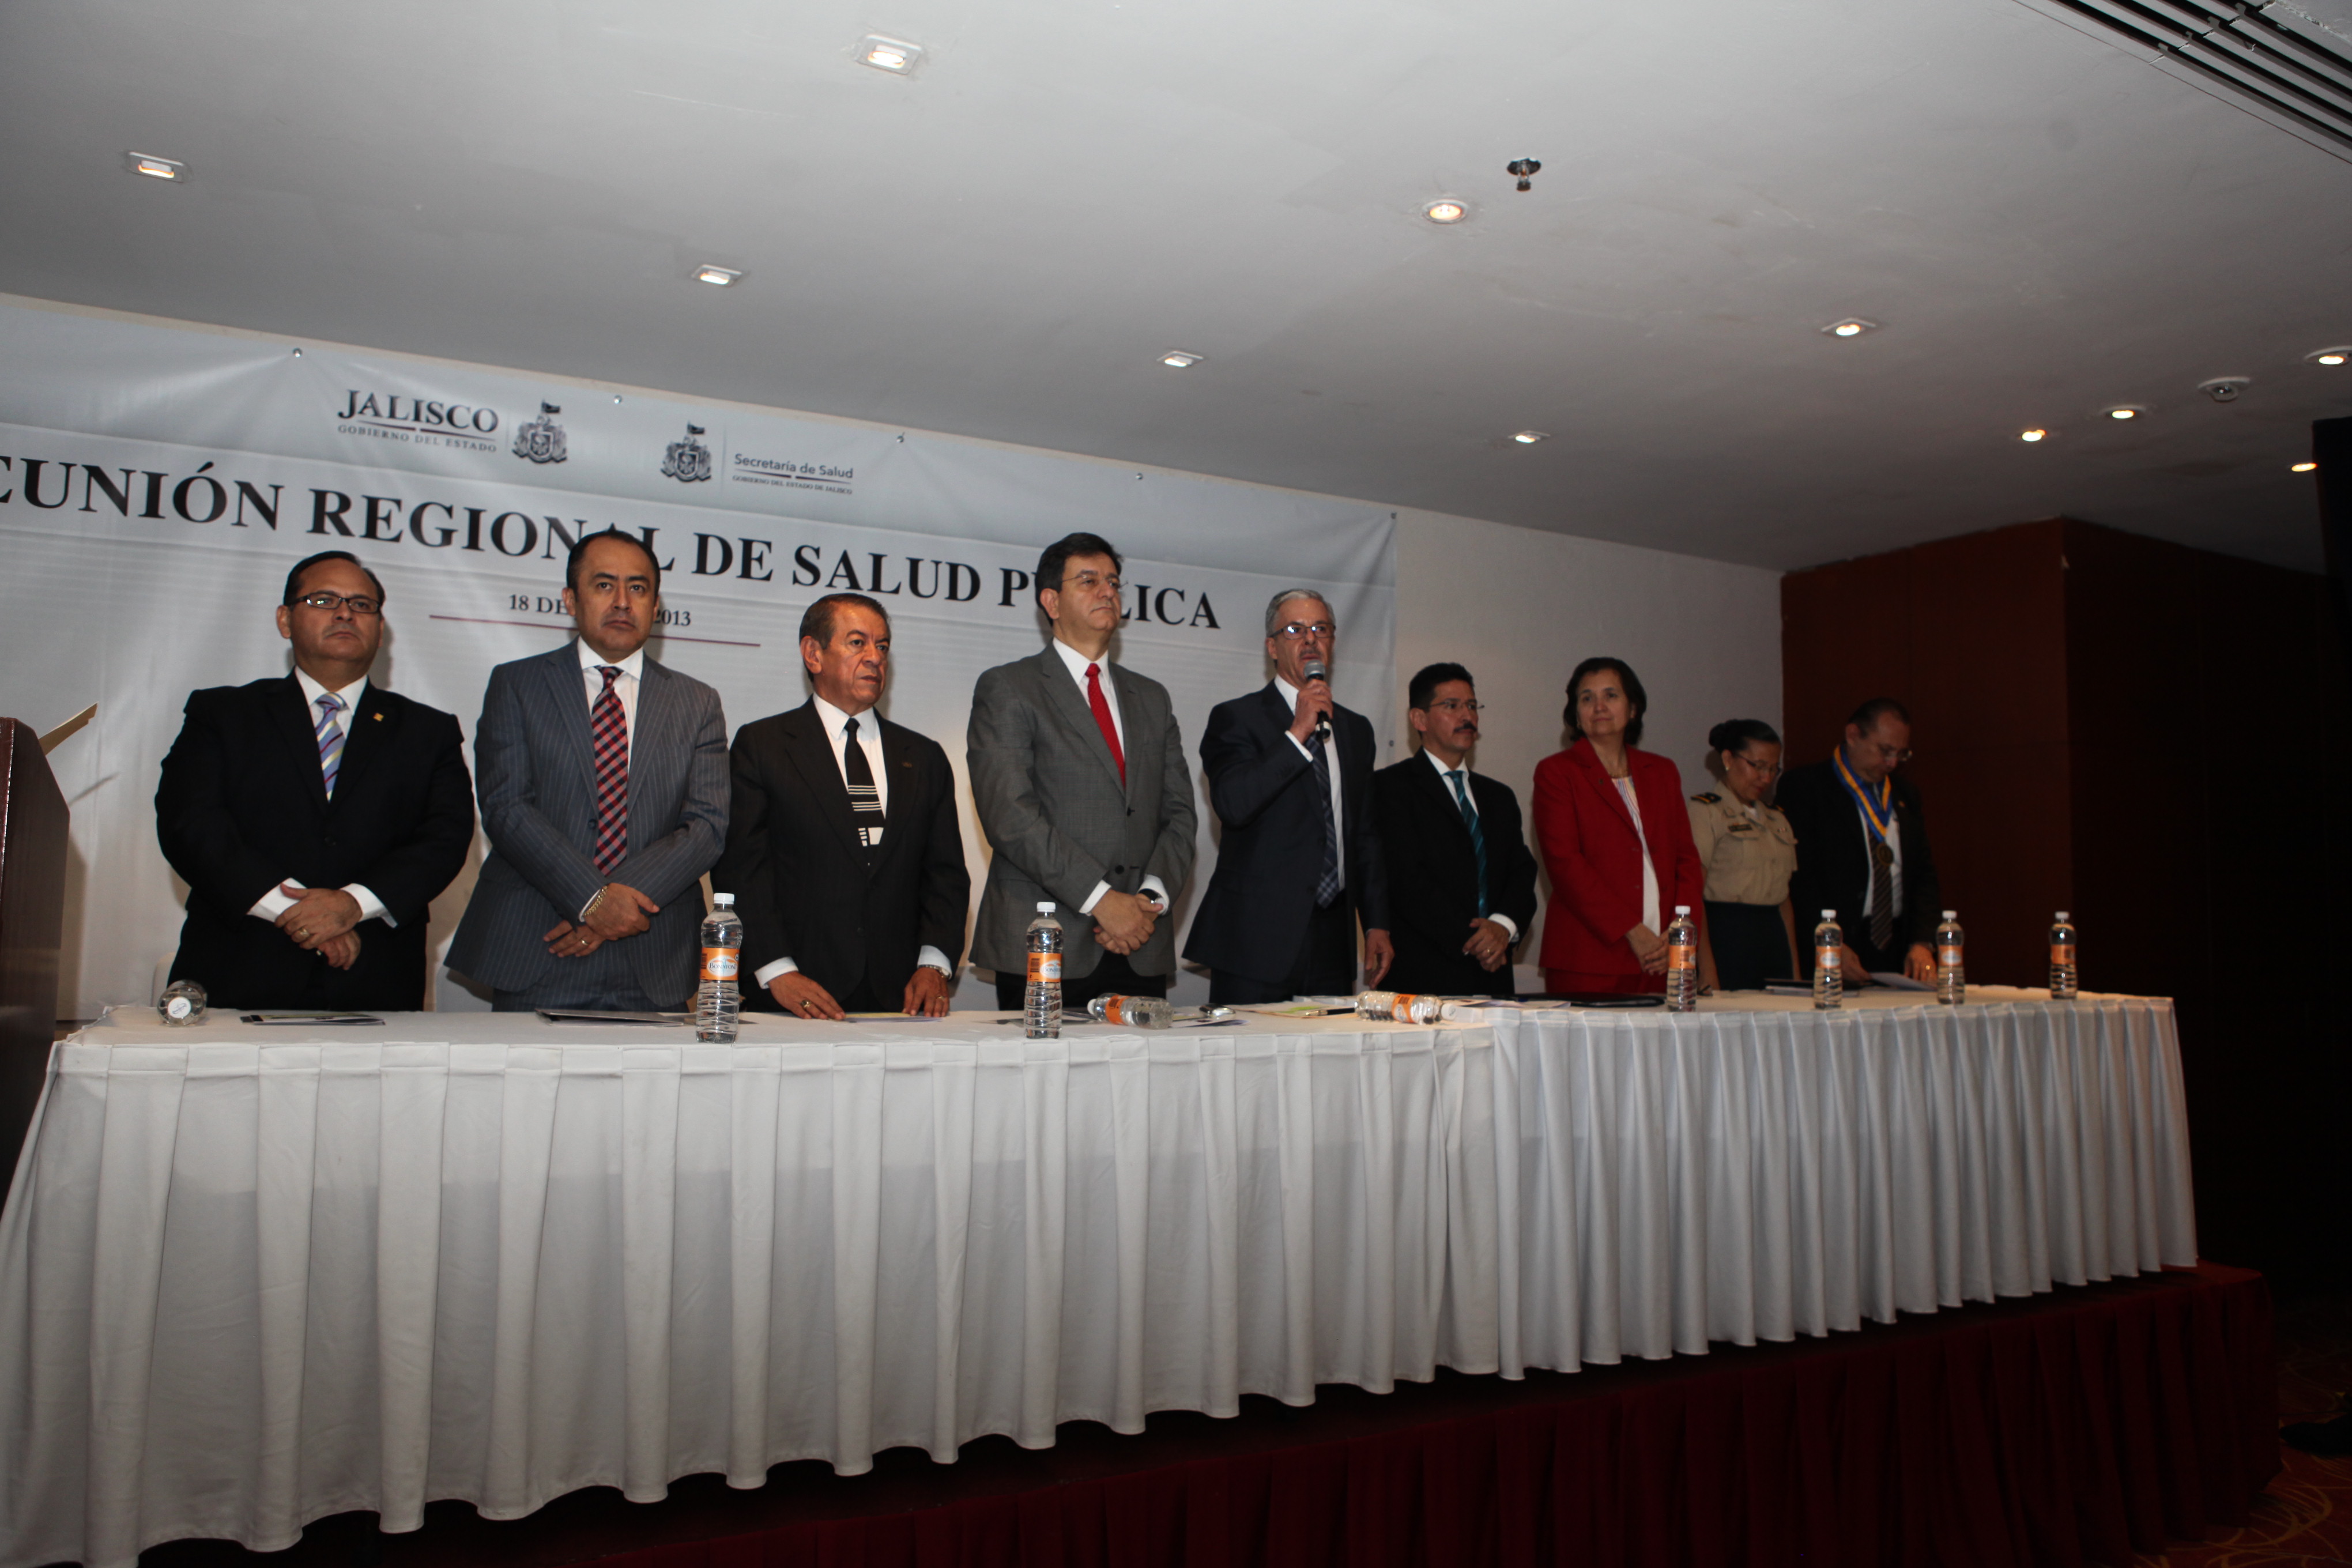  Reúne Jalisco a expertos en salud pública